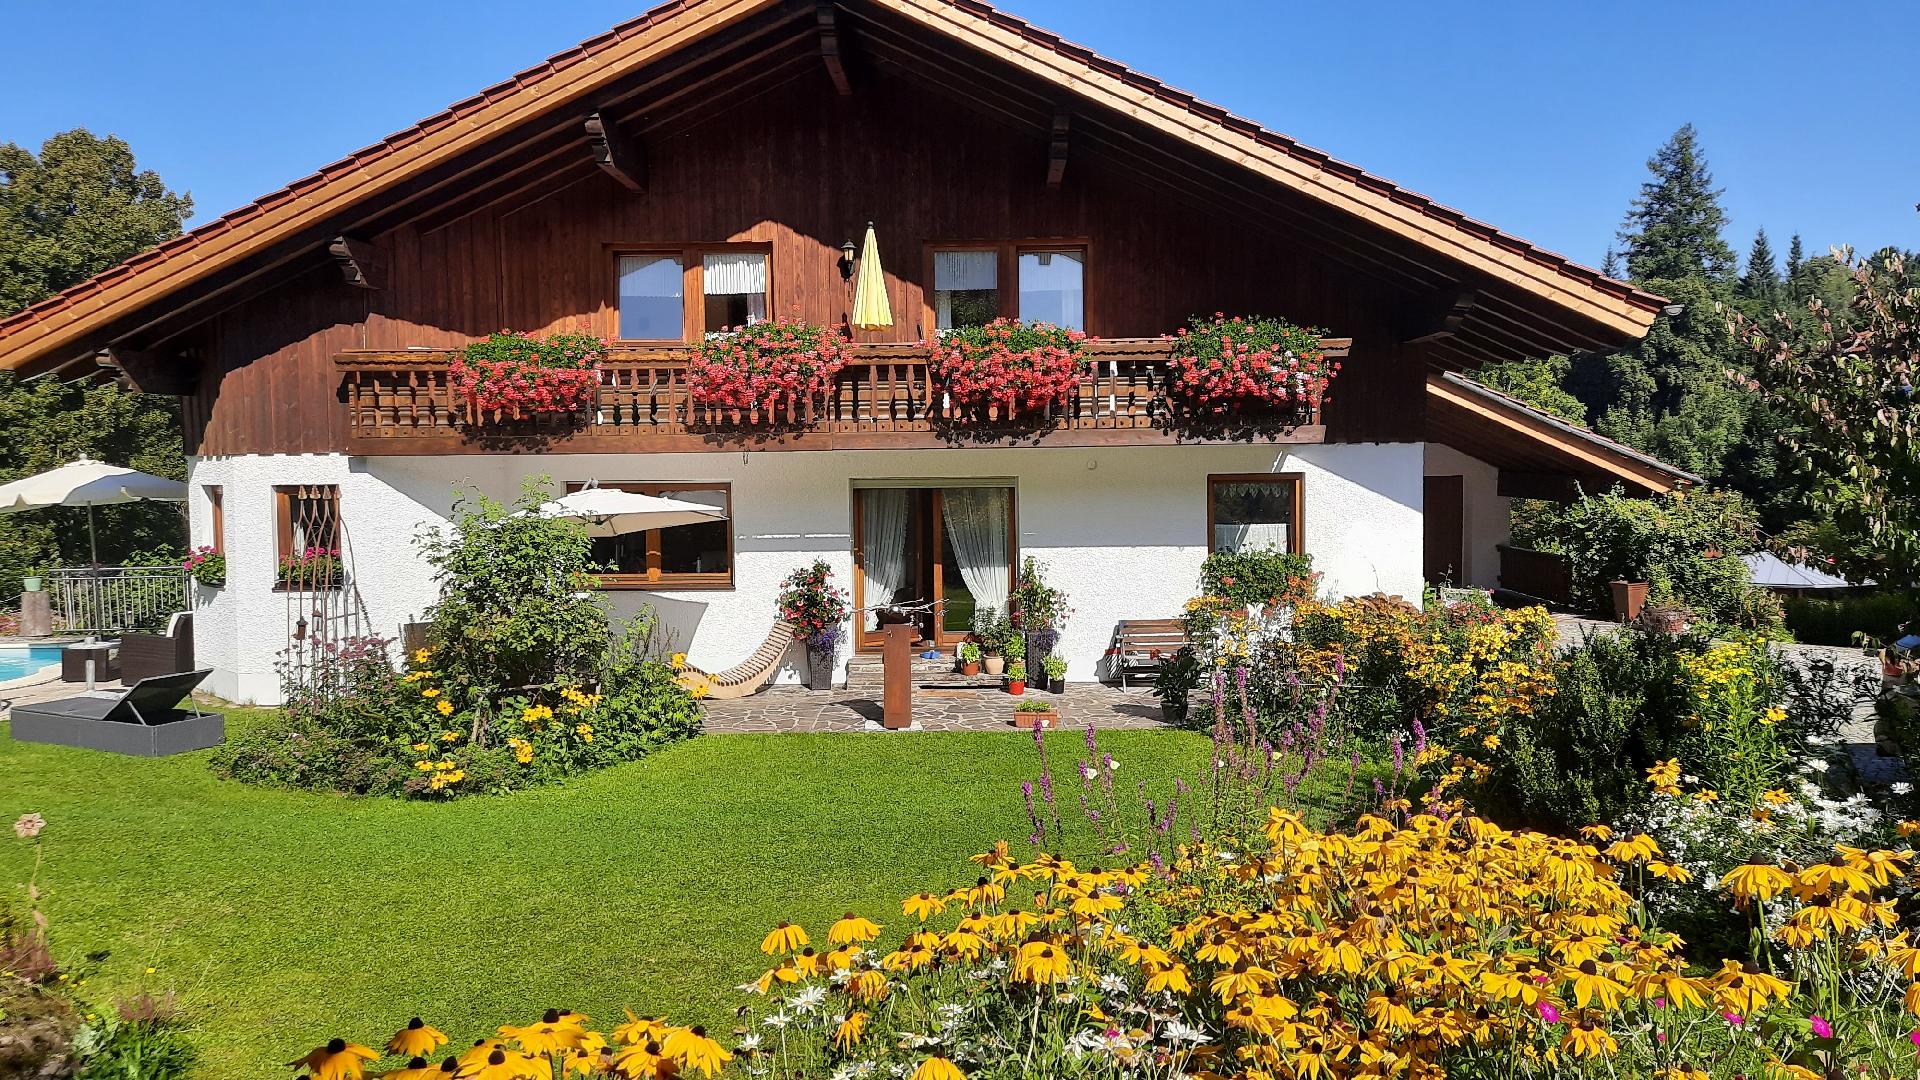 Ferienwohnung für 2 Personen ca. 58 m² i Ferienhaus in Europa